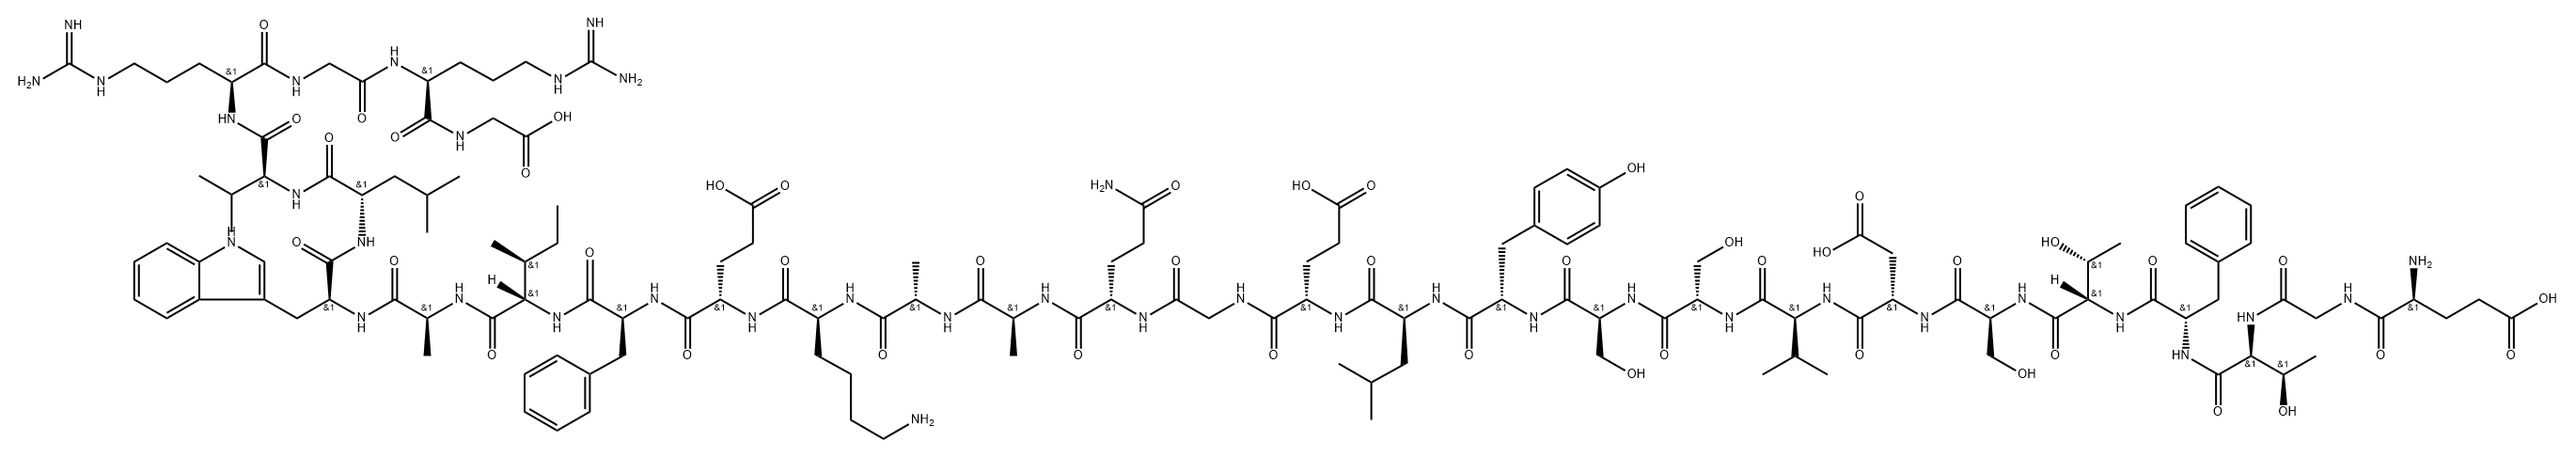 Glycine, L-α-glutamylglycyl-L-threonyl-L-phenylalanyl-L-threonyl-L-seryl-L-α-aspartyl-L-valyl-L-seryl-L-seryl-L-tyrosyl-L-leucyl-L-α-glutamylglycyl-L-glutaminyl-L-alanyl-L-alanyl-L-lysyl-L-α-glutamyl-L-phenylalanyl-L-isoleucyl-L-alanyl-L-tryptophyl-L-leucyl-L-valyl-L-arginylglycyl-L-arginyl- Structure